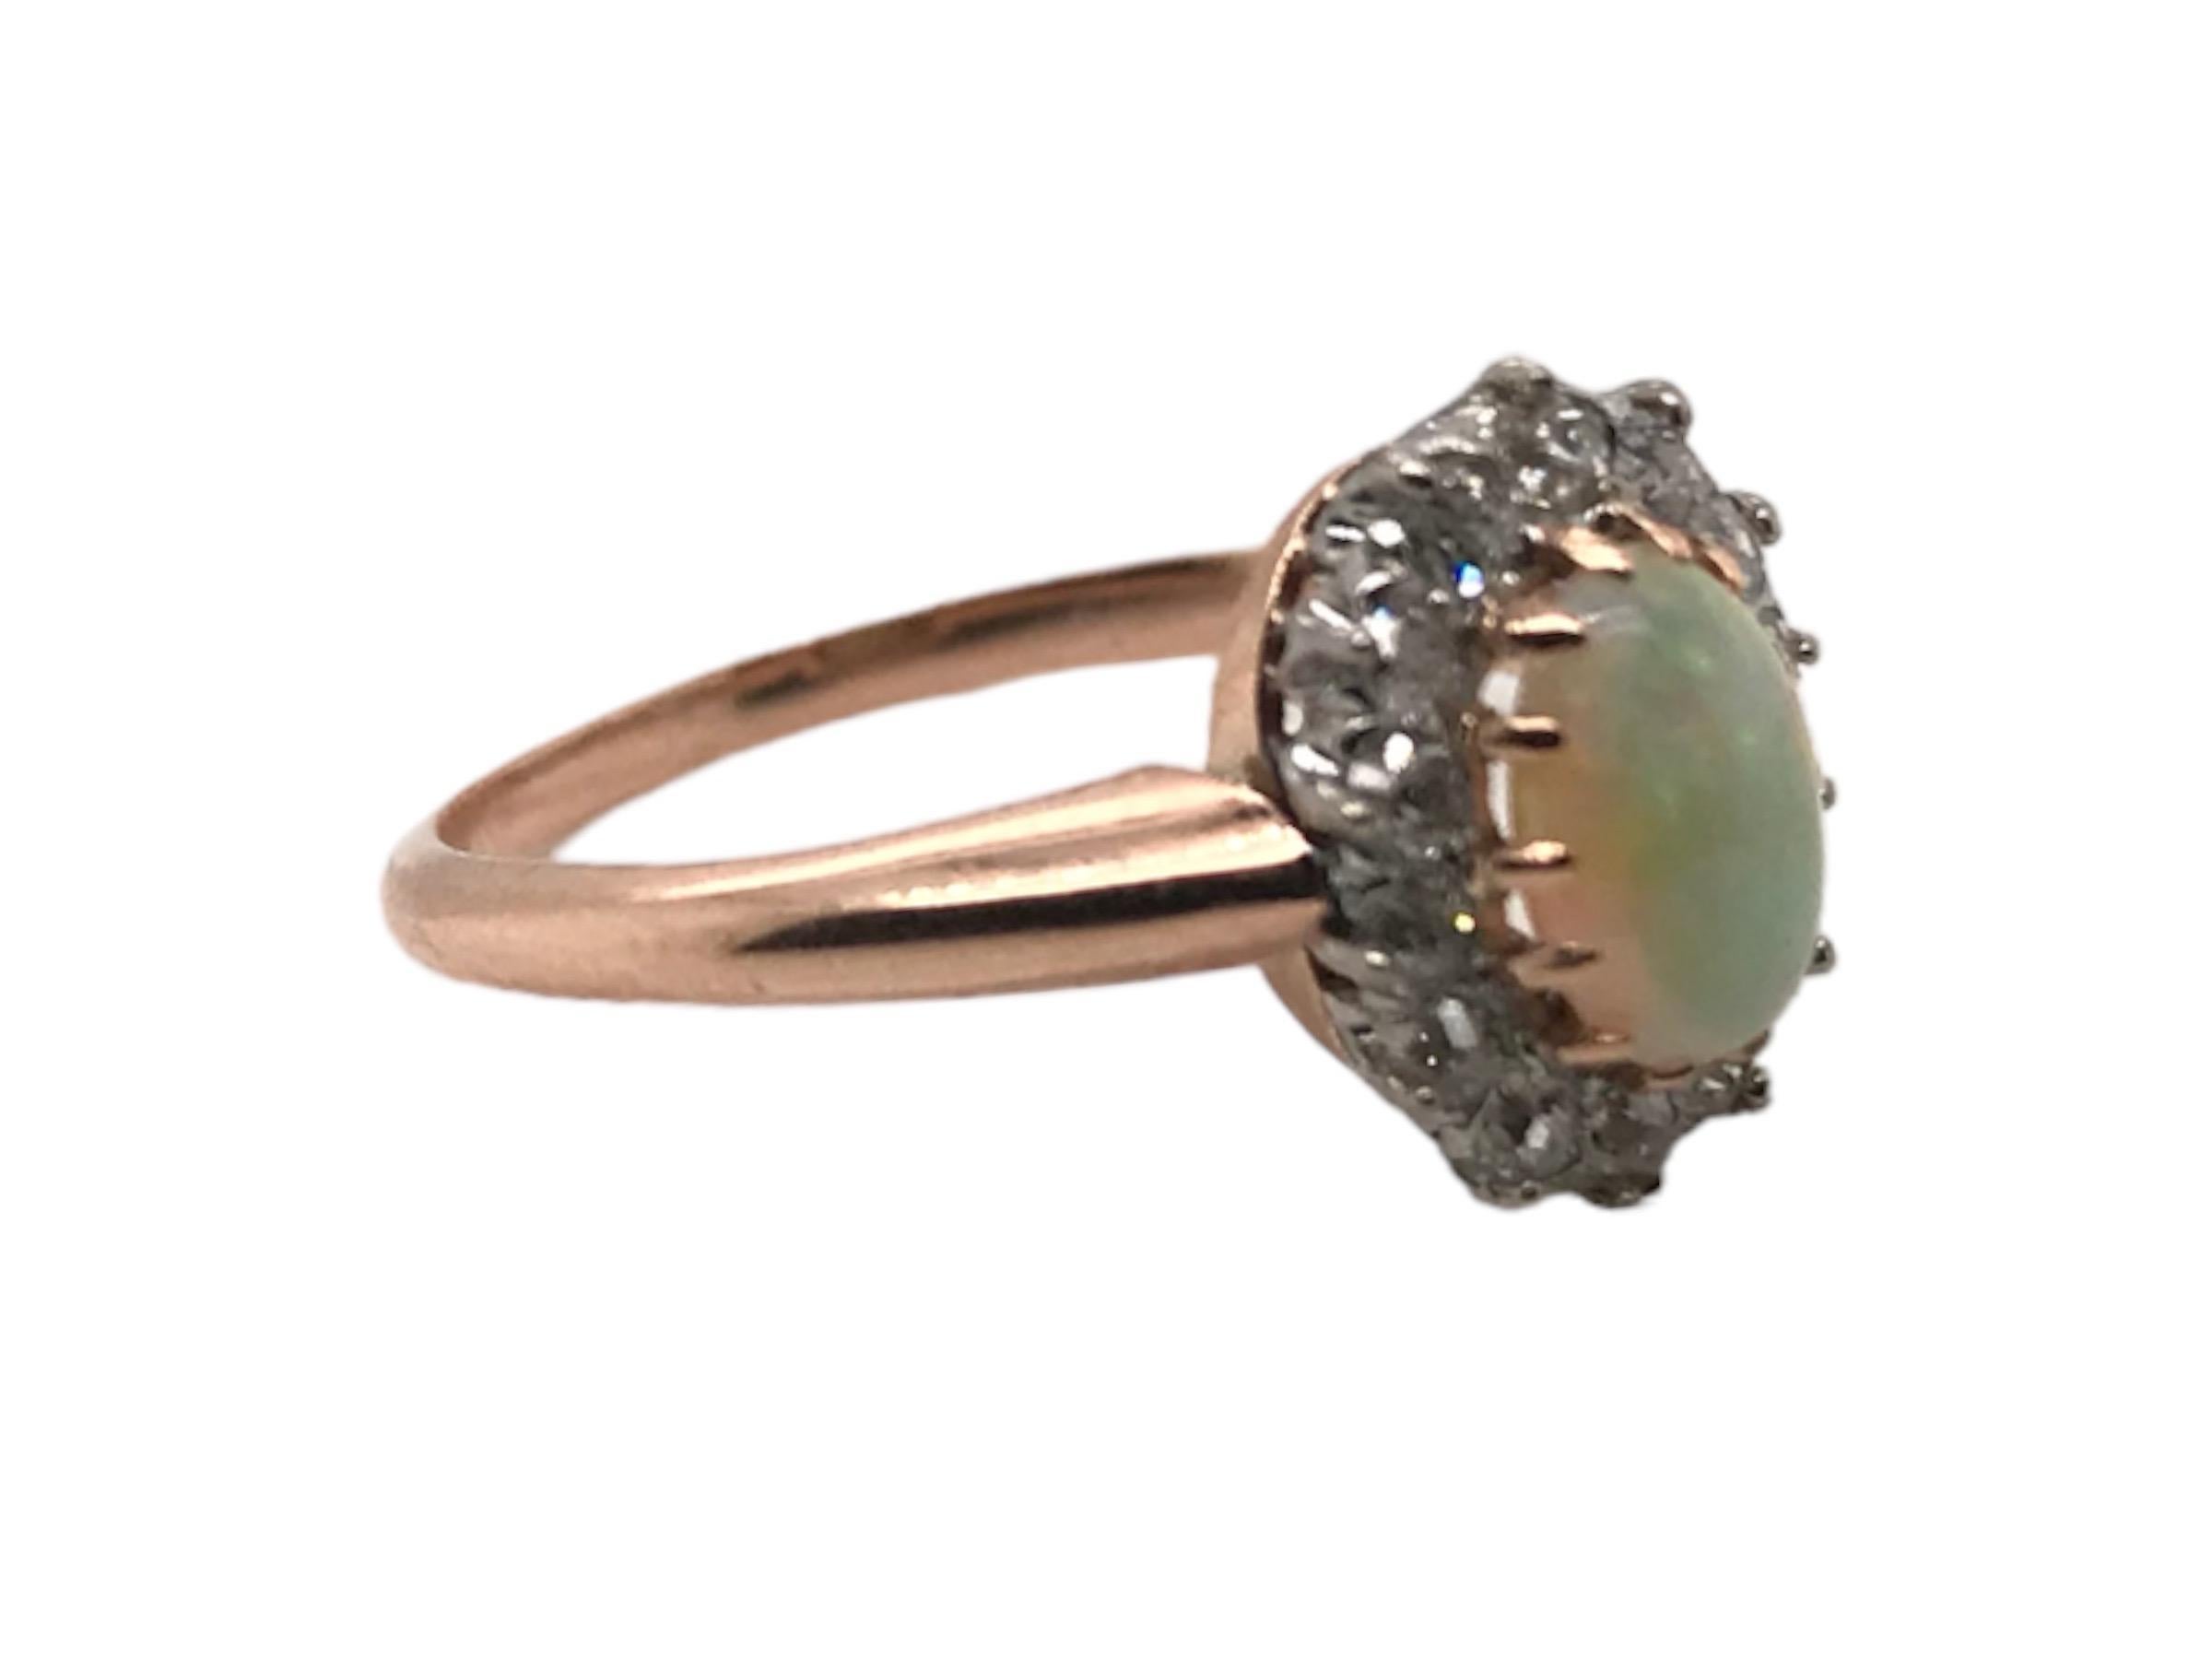 Nous aimons toujours les vieux anneaux de halo taillés à la mine !
Cette beauté est composée d'une opale vibrante qui présente une belle combinaison de bleu, de vert et de rouge. 
La pierre principale est rehaussée d'un ensemble de diamants de